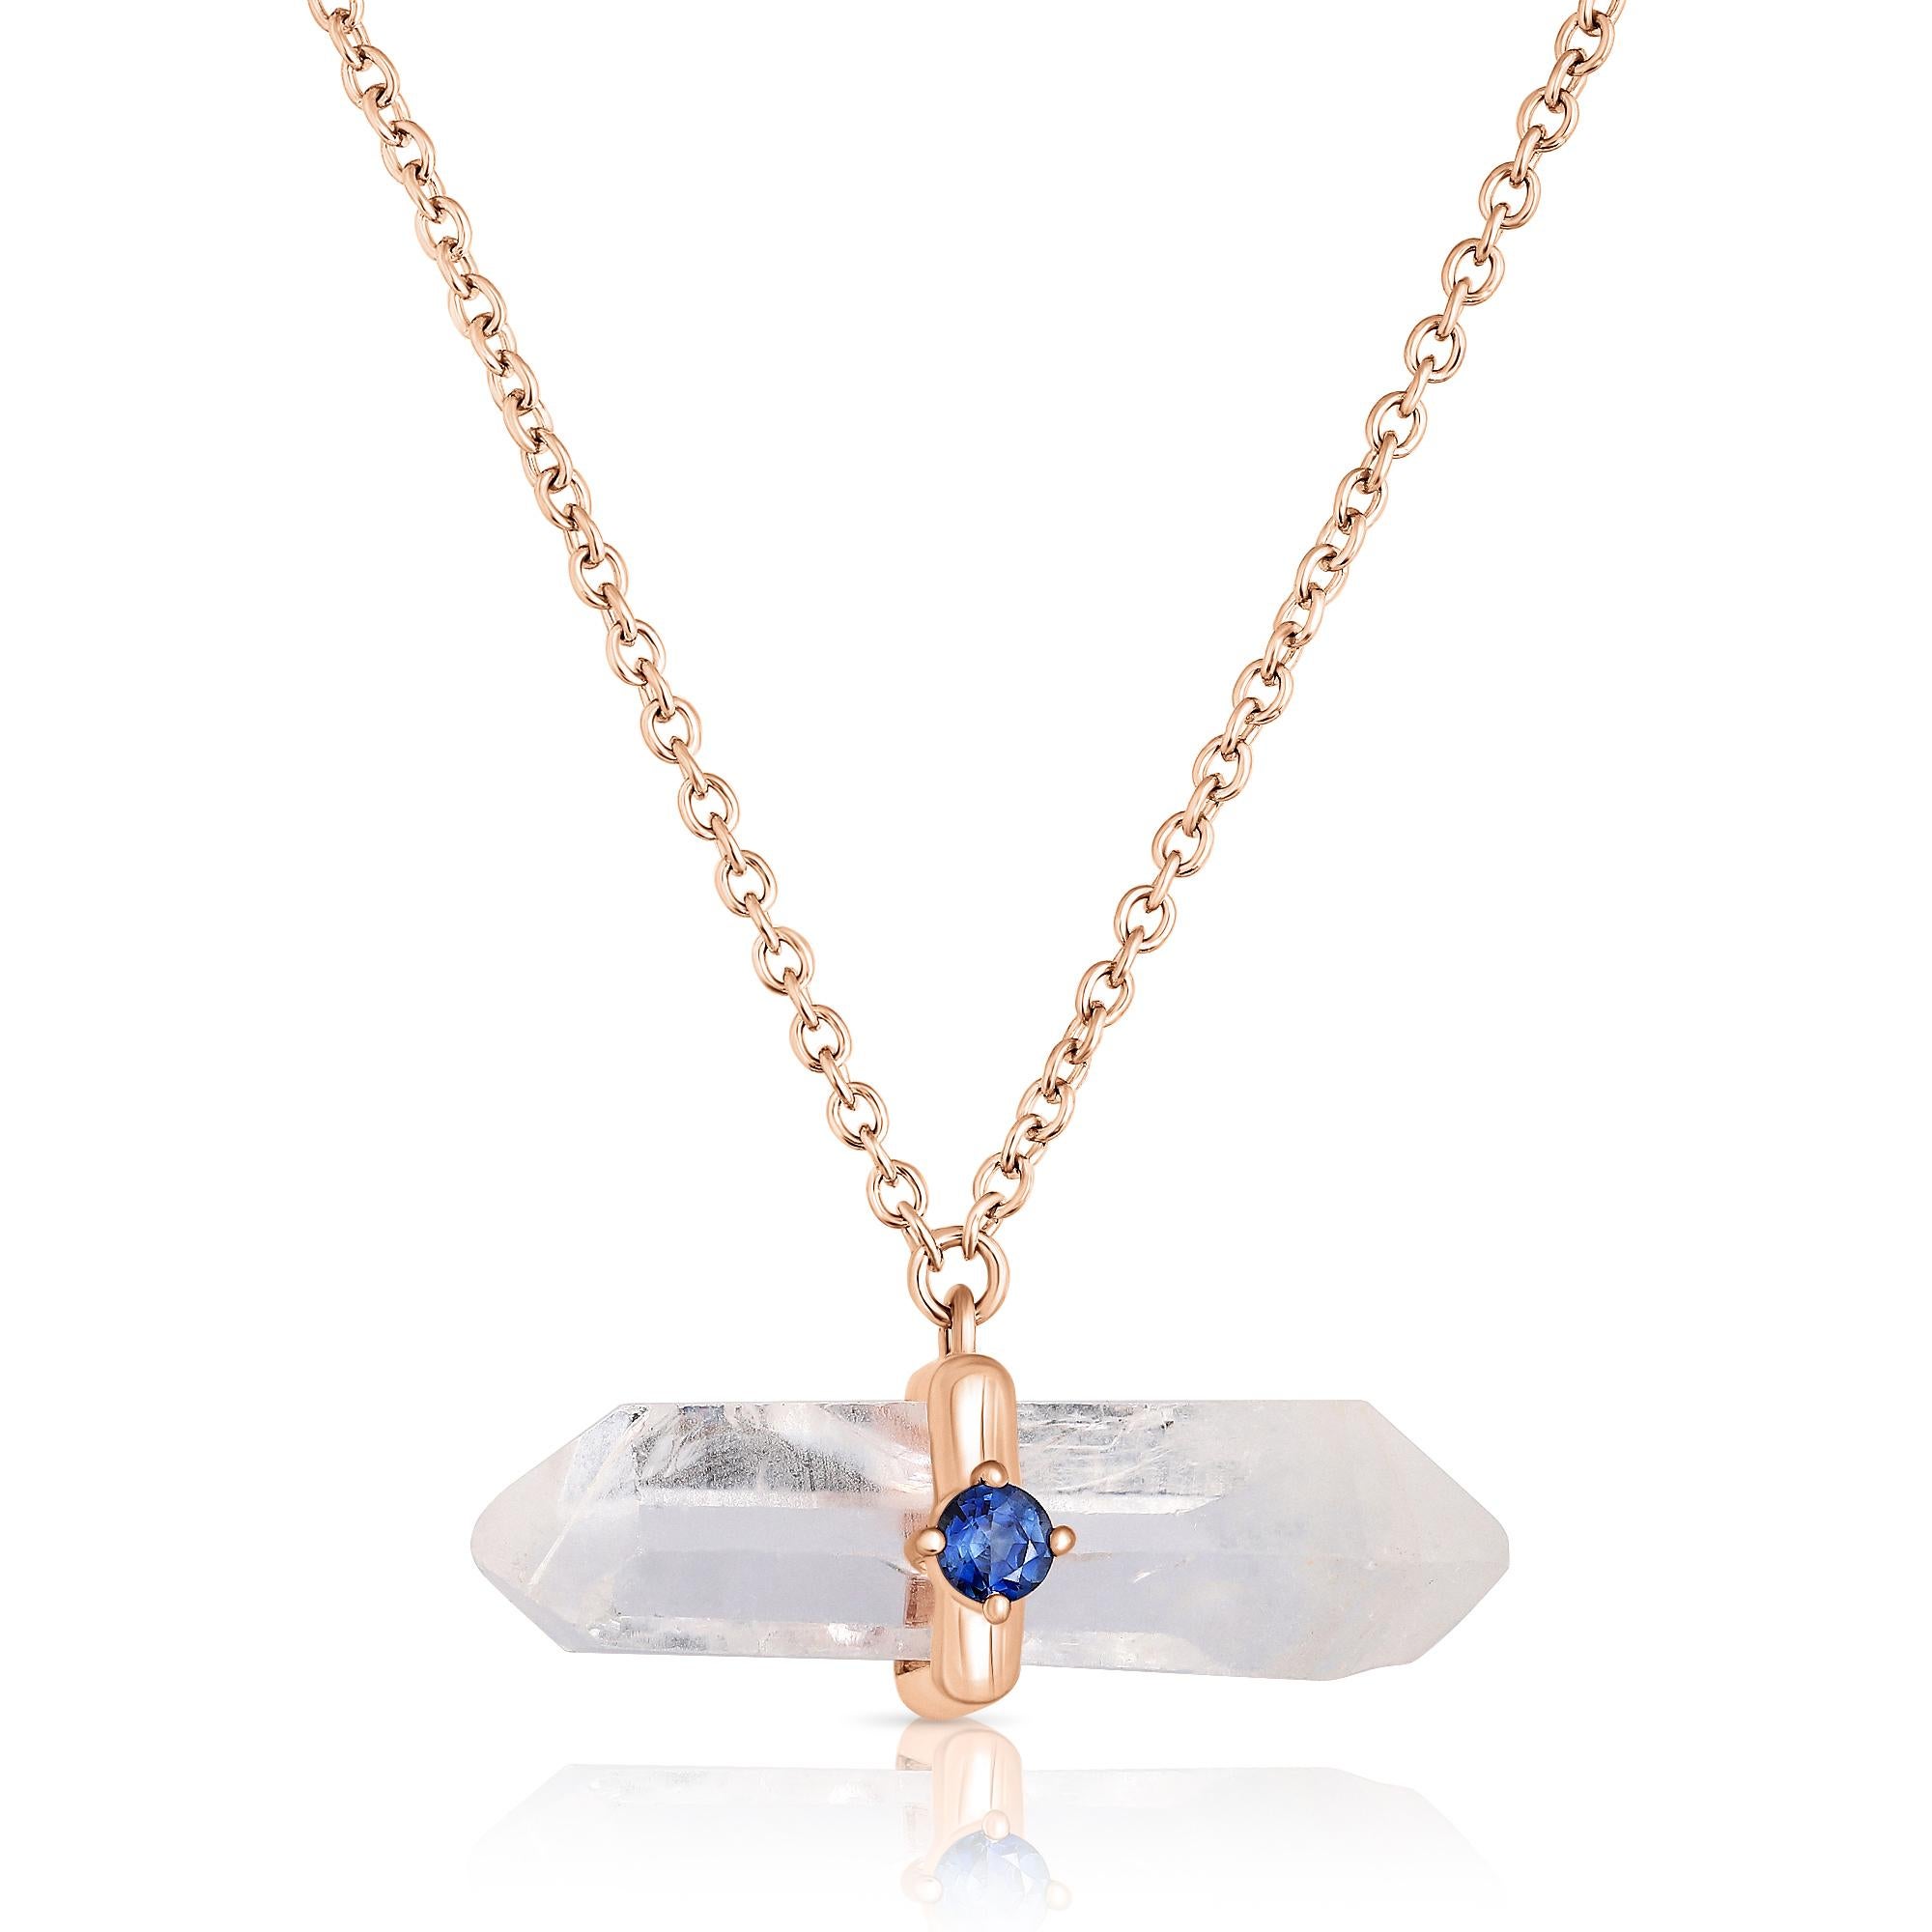 Uncut 16.54 Carat Quartz Crystal Necklace For Sale